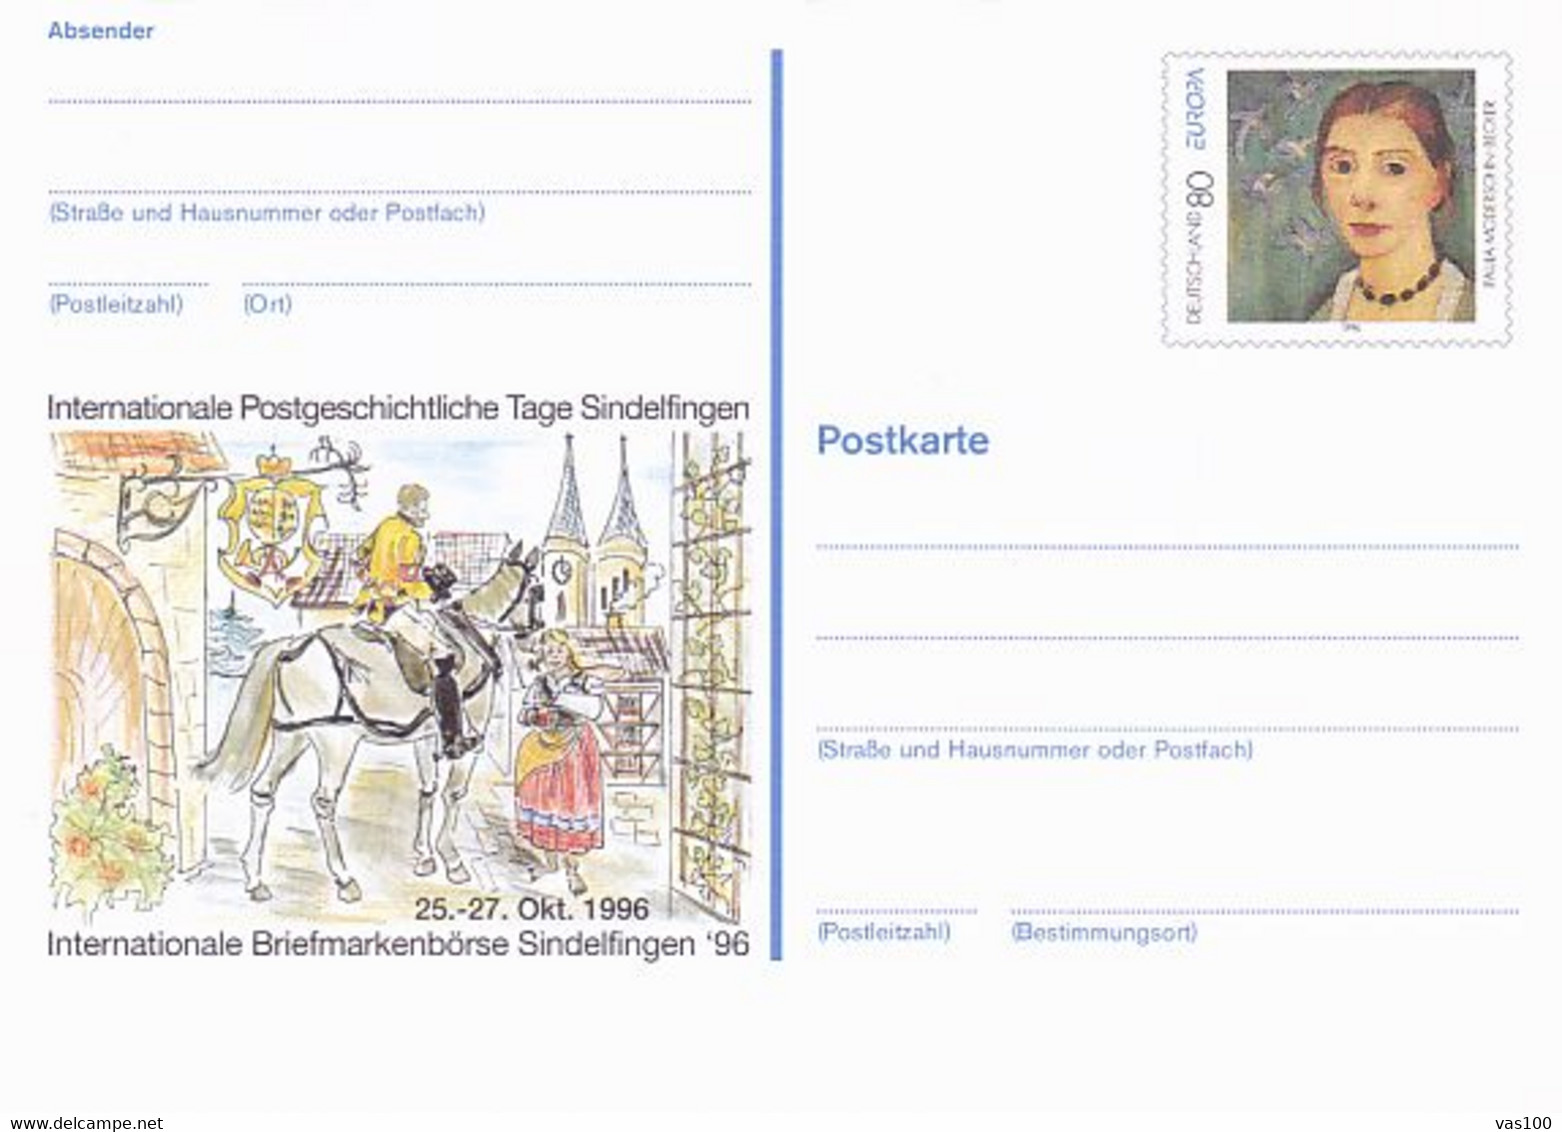 SINDELFINGEN PHILATELIC EXHIBITION, PAINTING, PC STATIONERY, ENTIER POSTAL, 1996, GERMANY - Postkarten - Ungebraucht